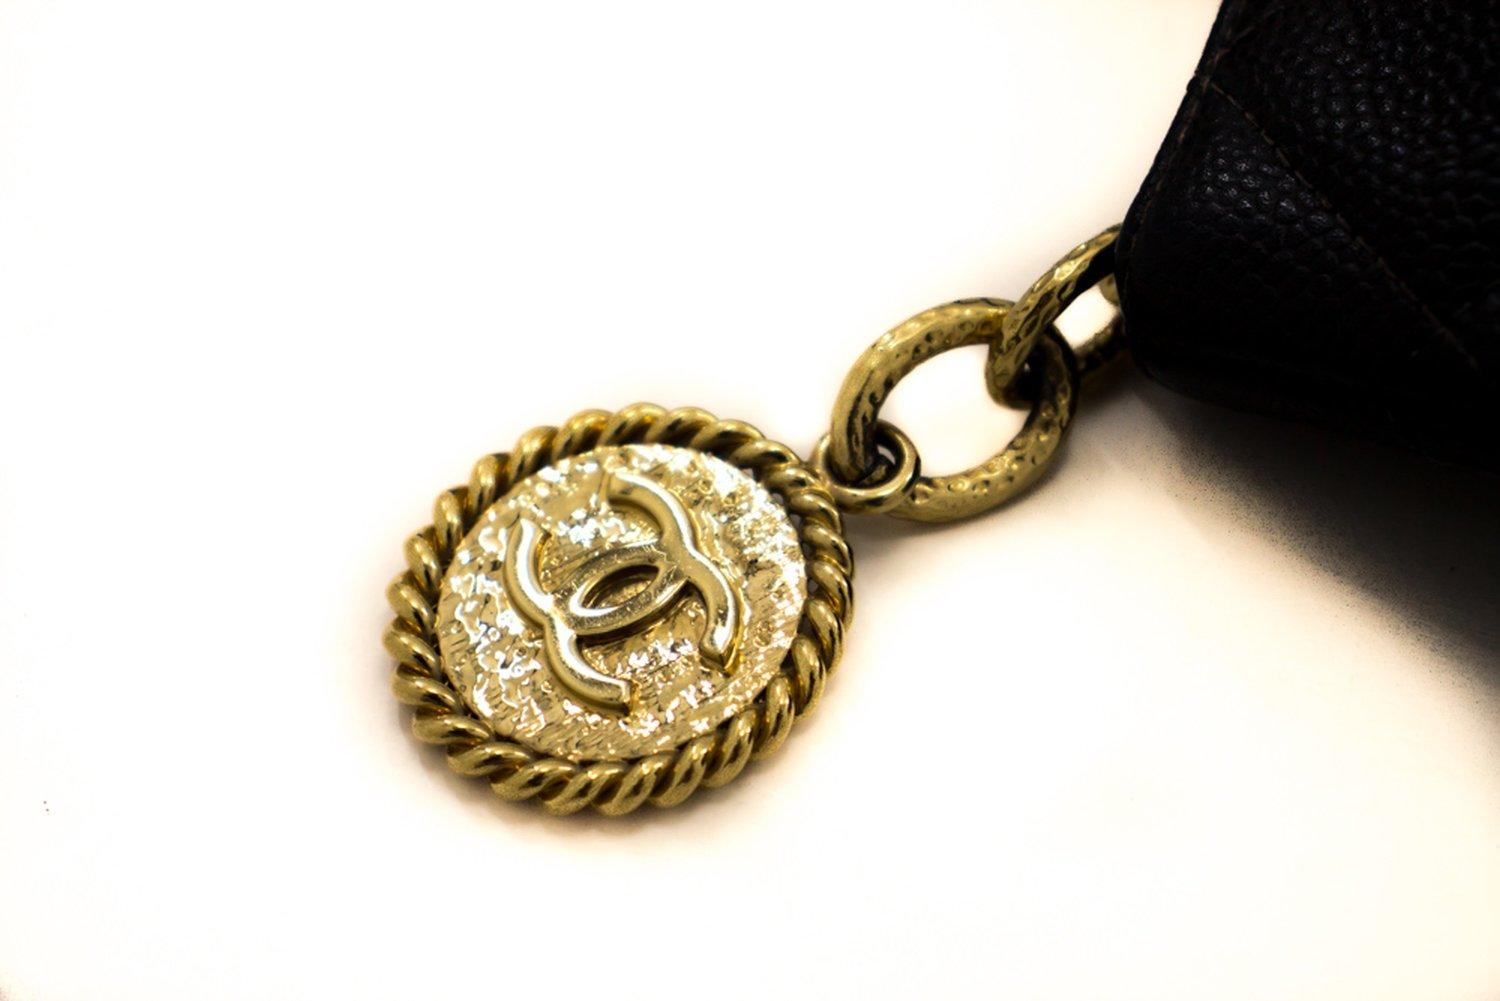 CHANEL Gold Medallion Caviar Shoulder Bag Grand Shop Tote Black 8